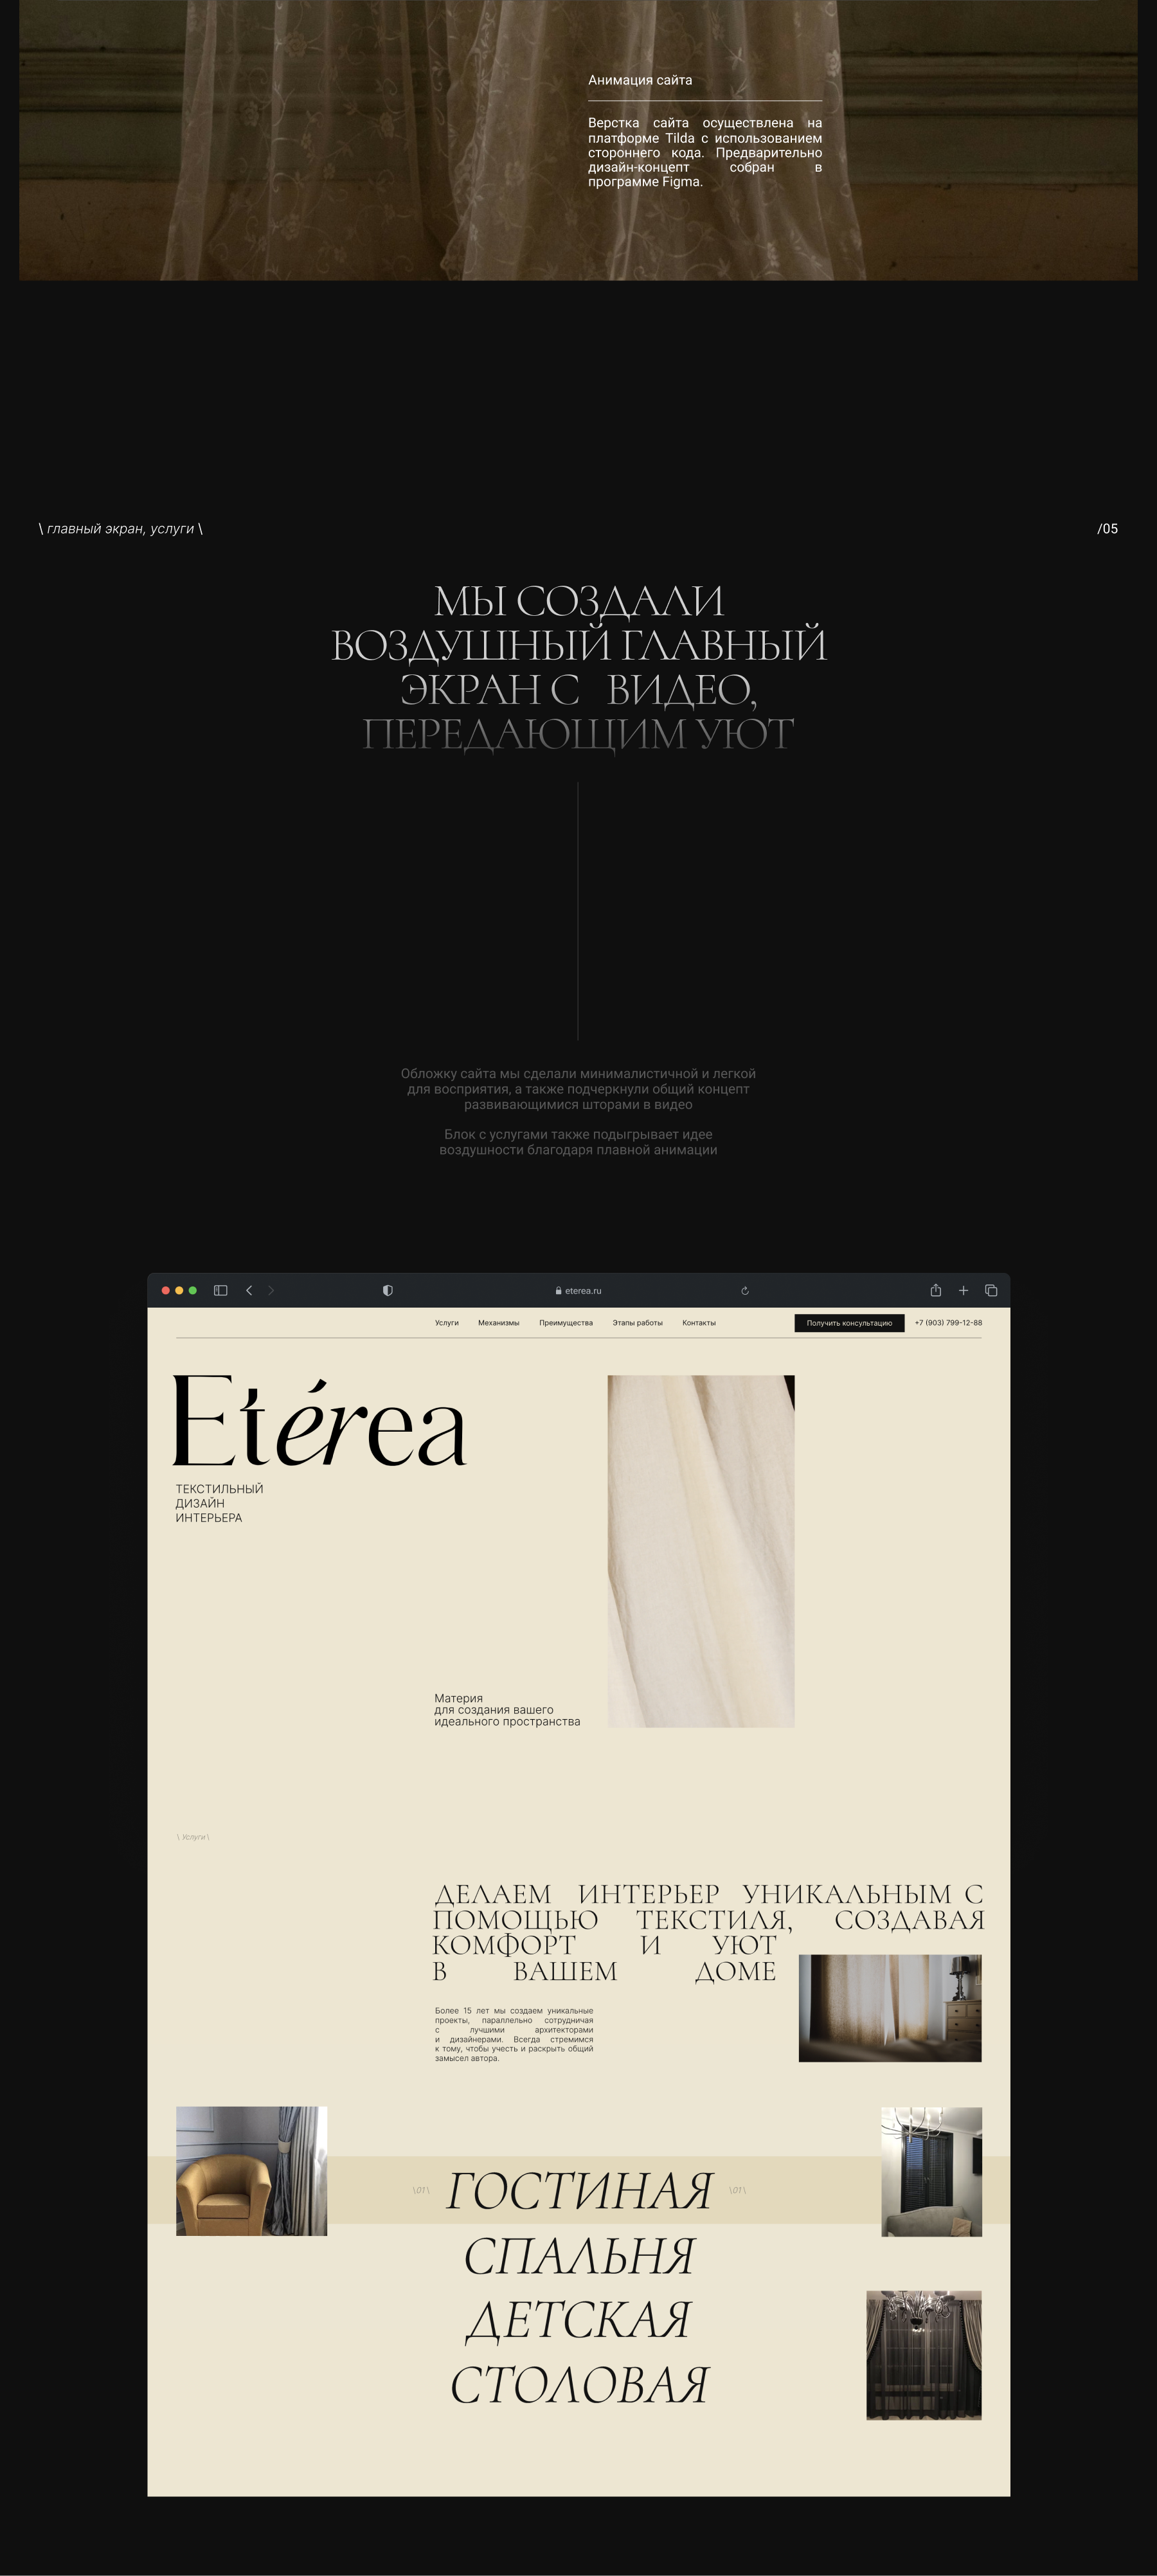 Eterea. Текстильный дизайн интерьера — Изображение №4 — Интерфейсы, Анимация на Dprofile